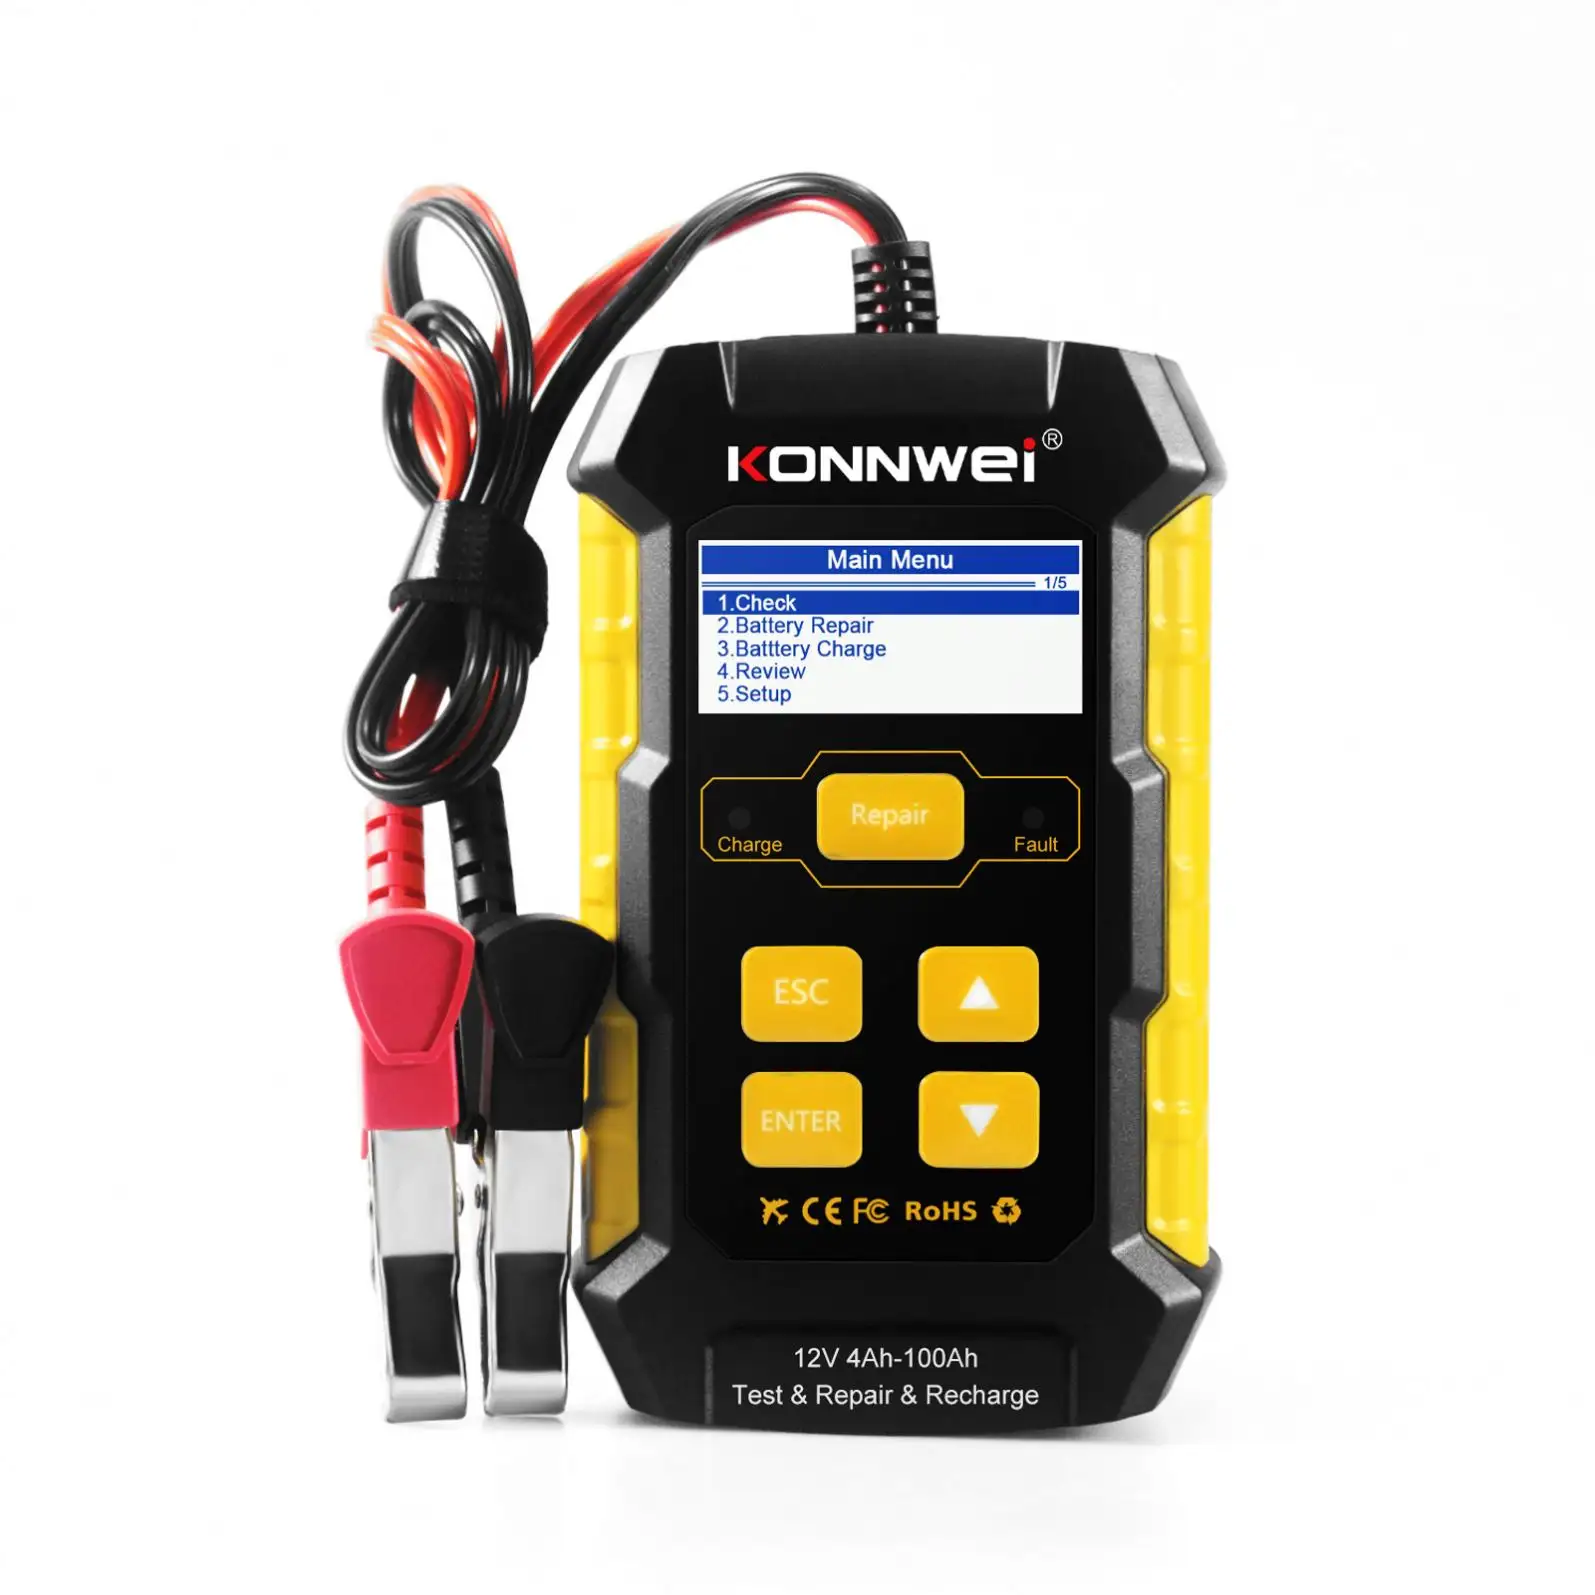 KONNWEI KW510 entièrement automatique 12V testeur de batterie de voiture réparation d'impulsion 5A chargeurs de batterie humide sec AGM Gel plomb acide outil de réparation de voiture